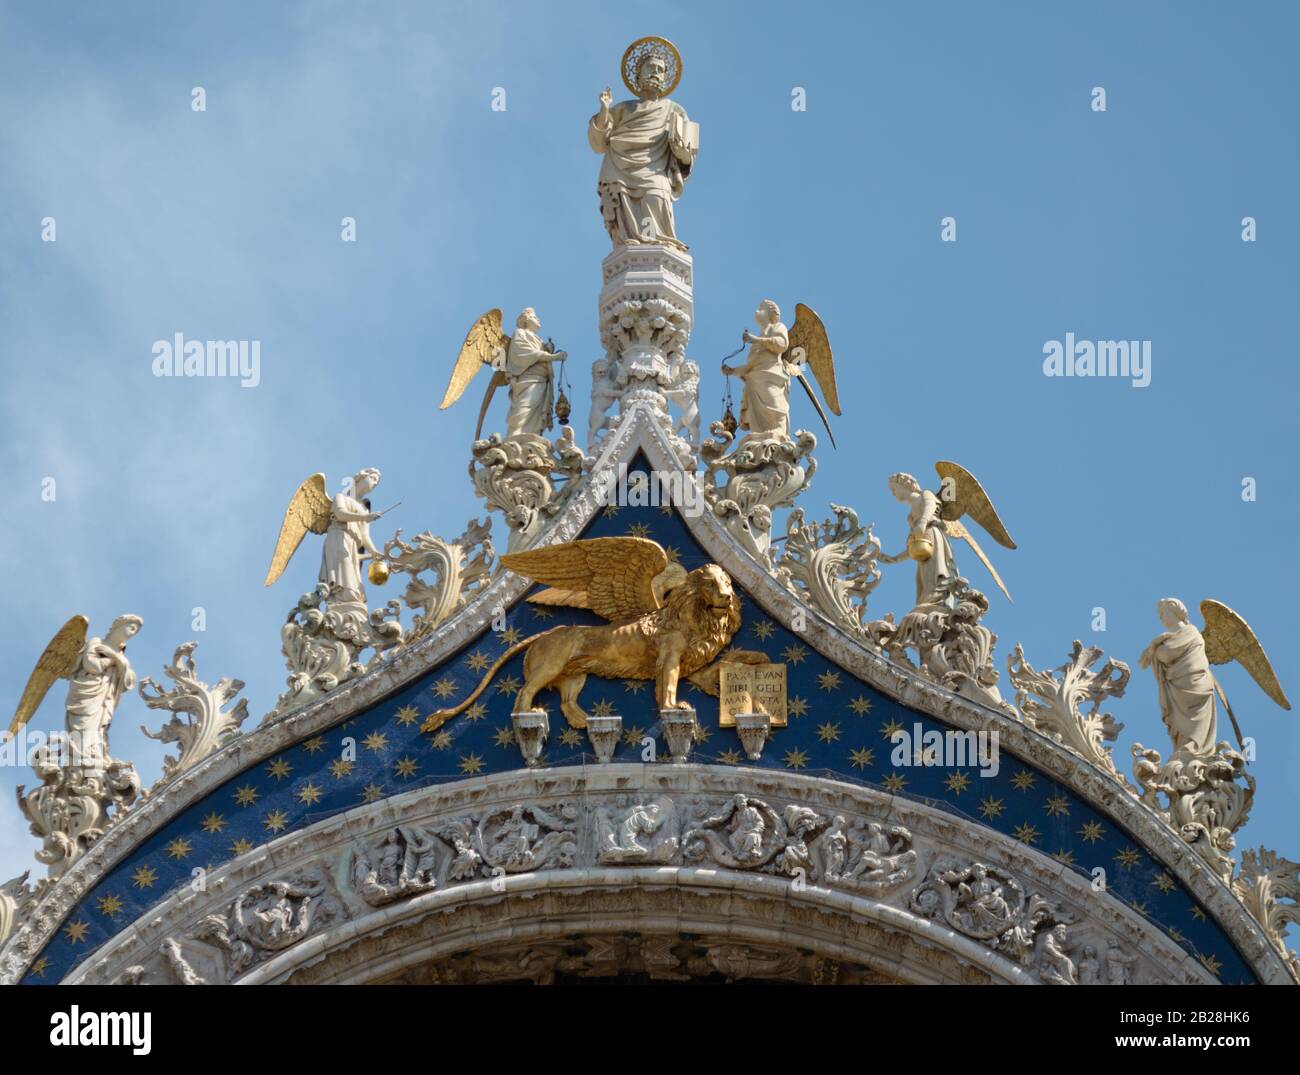 Statue des Heiligen Markus Apostel, Engel und ein goldener Löwe. Architektonische Detail der Fassade Kathedrale Basilika San Marco, Venedig/Italien. Stockfoto